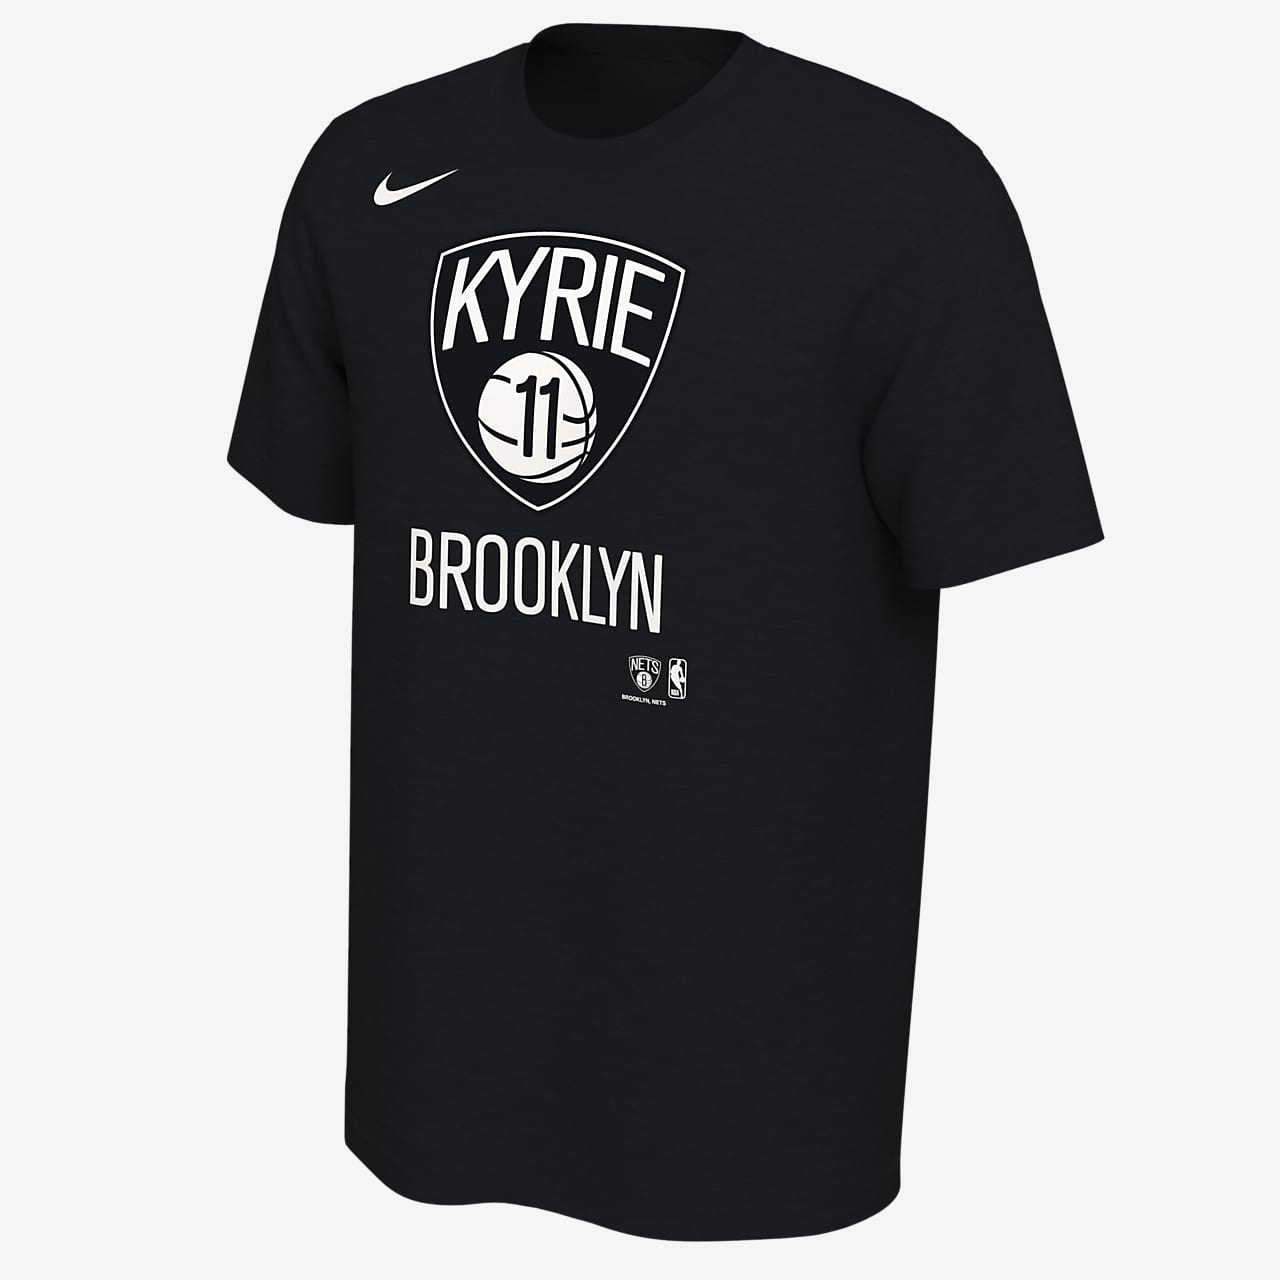 Playera NBA hombre Kyrie Irving Nets Nike.com